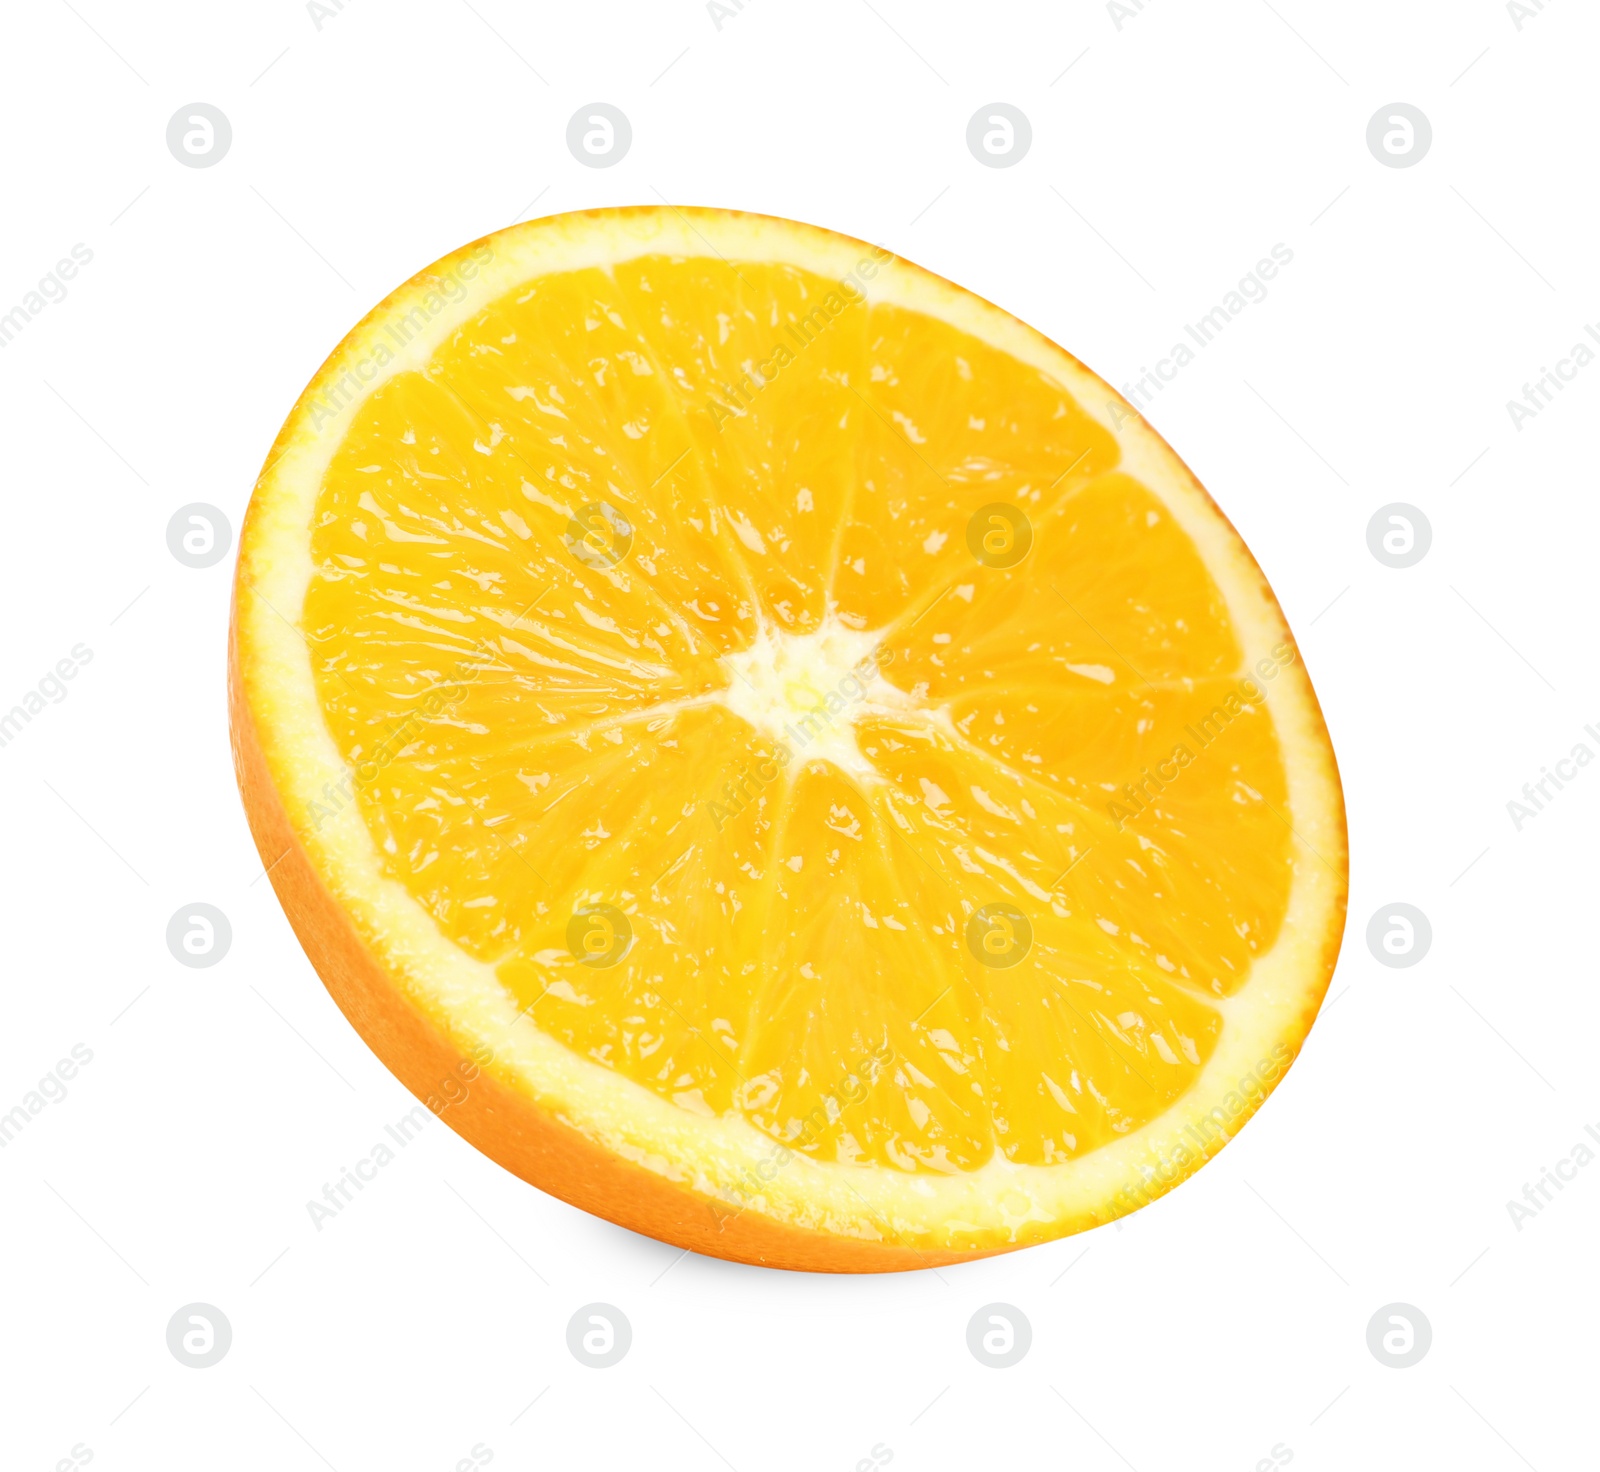 Photo of Citrus fruit. Half of fresh orange isolated on white